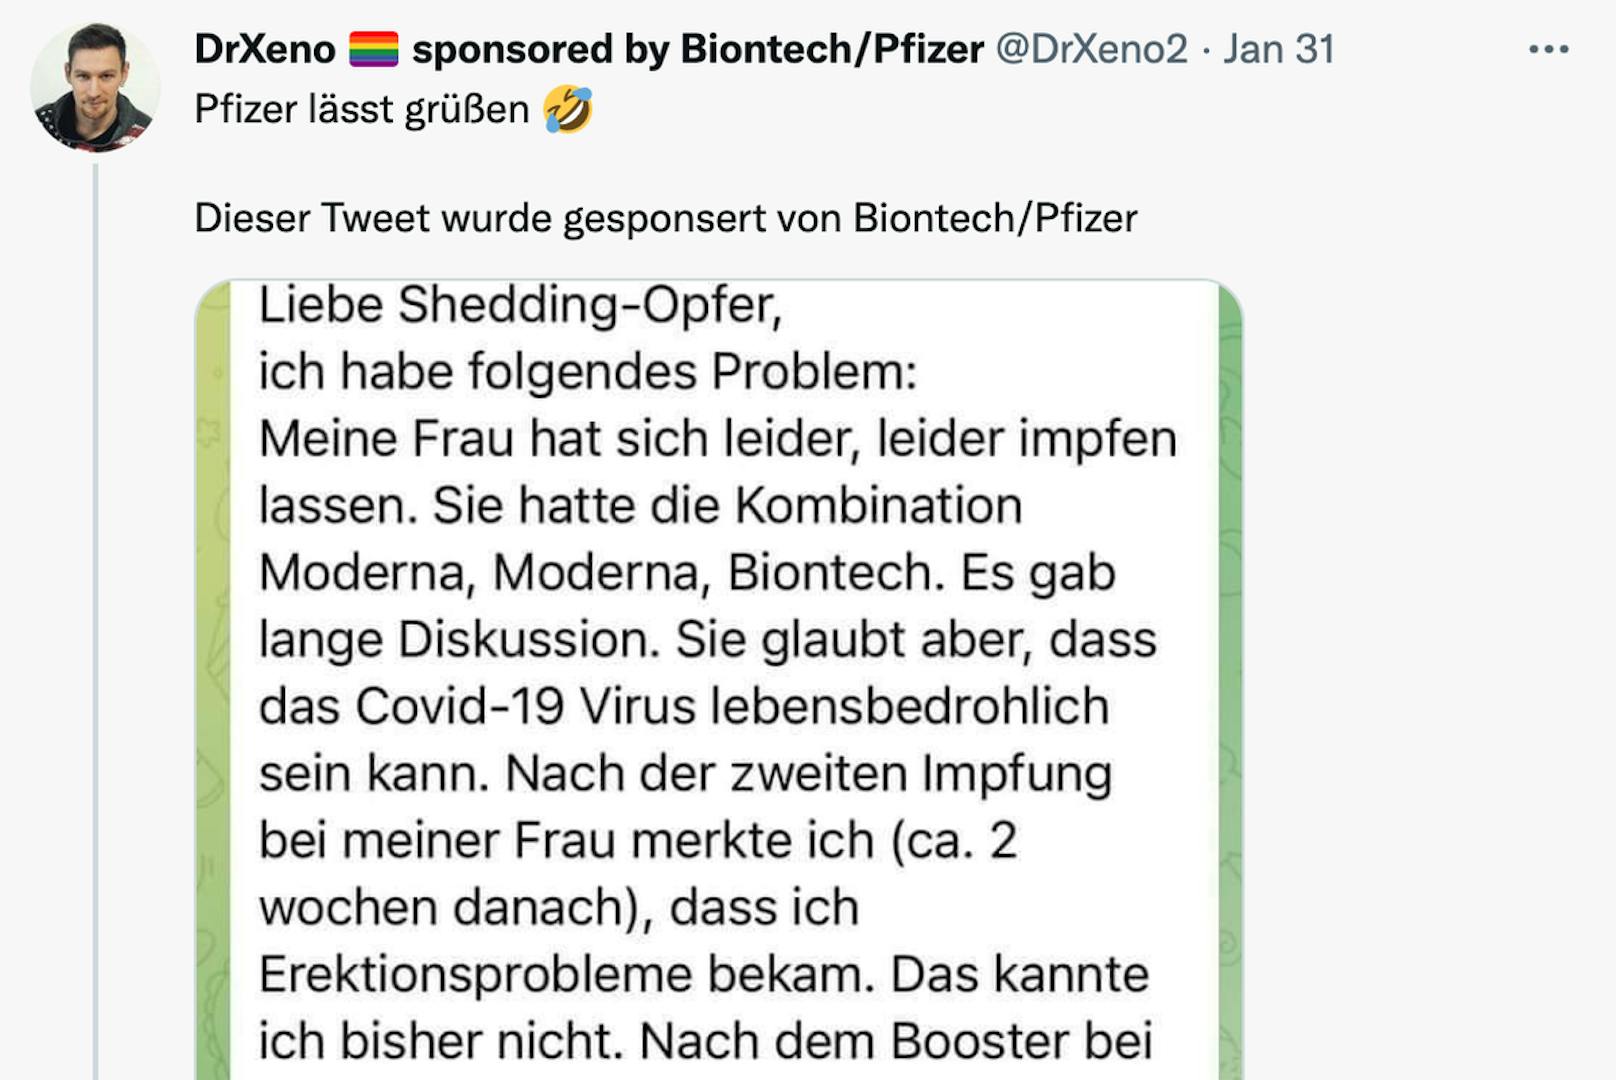 Der Twitter-User @drxeno2 macht auf einen Telegram-Post aufmerksam, in dem ein ungeimpfter Mann von seinen Erektionsproblemen berichtet, die ihn seit der zweiten Biontech/Pfizer-Impfung seiner Frau plagen.